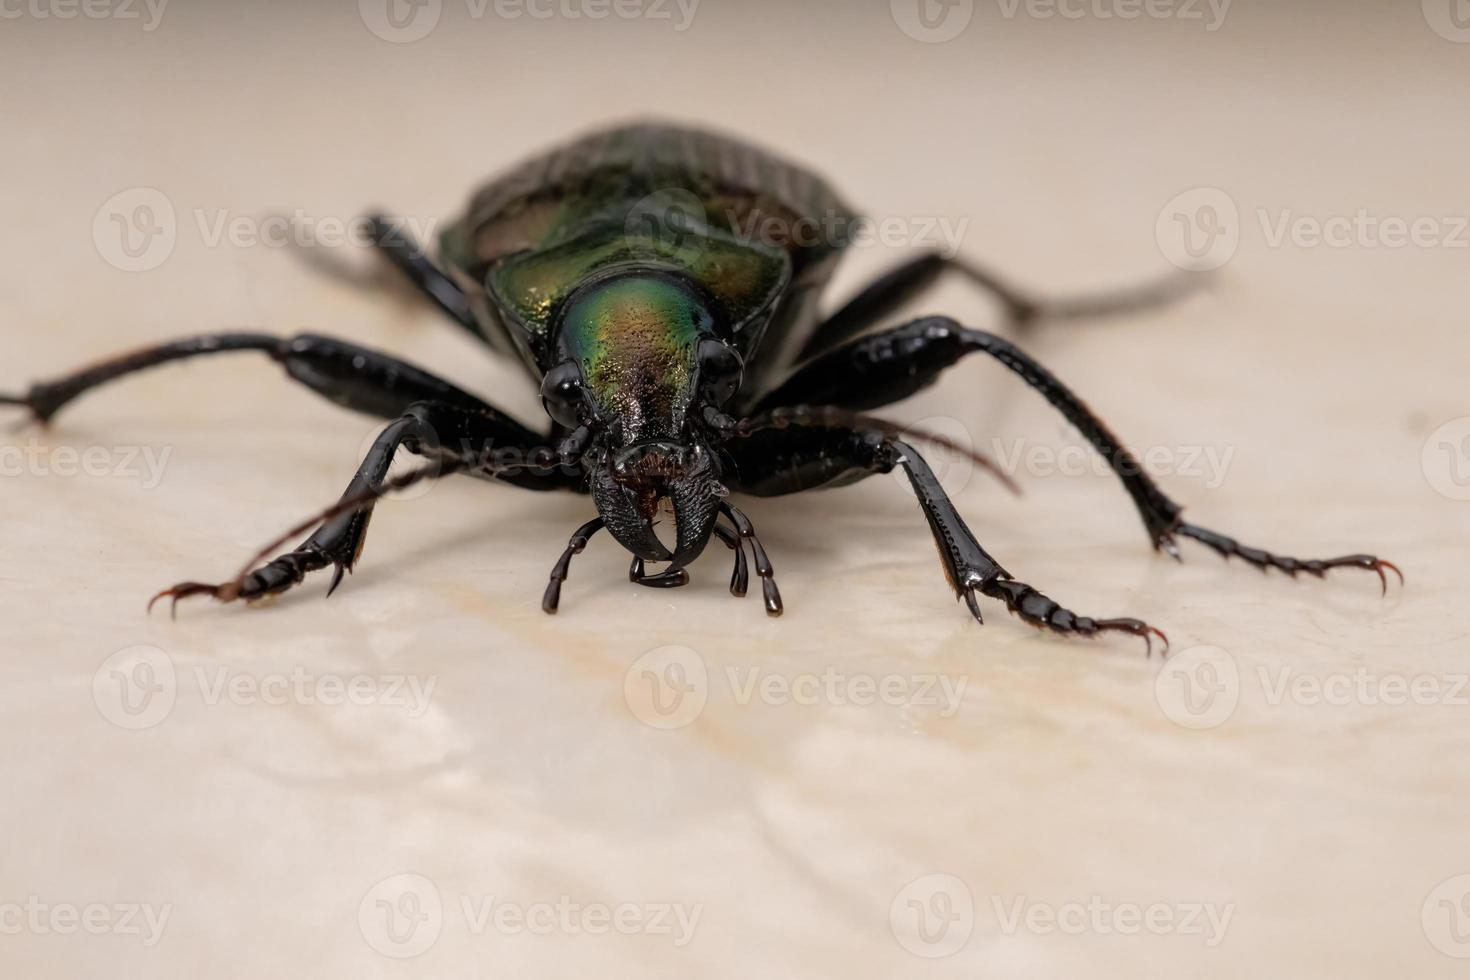 Escarabajo cazador de oruga adulto foto